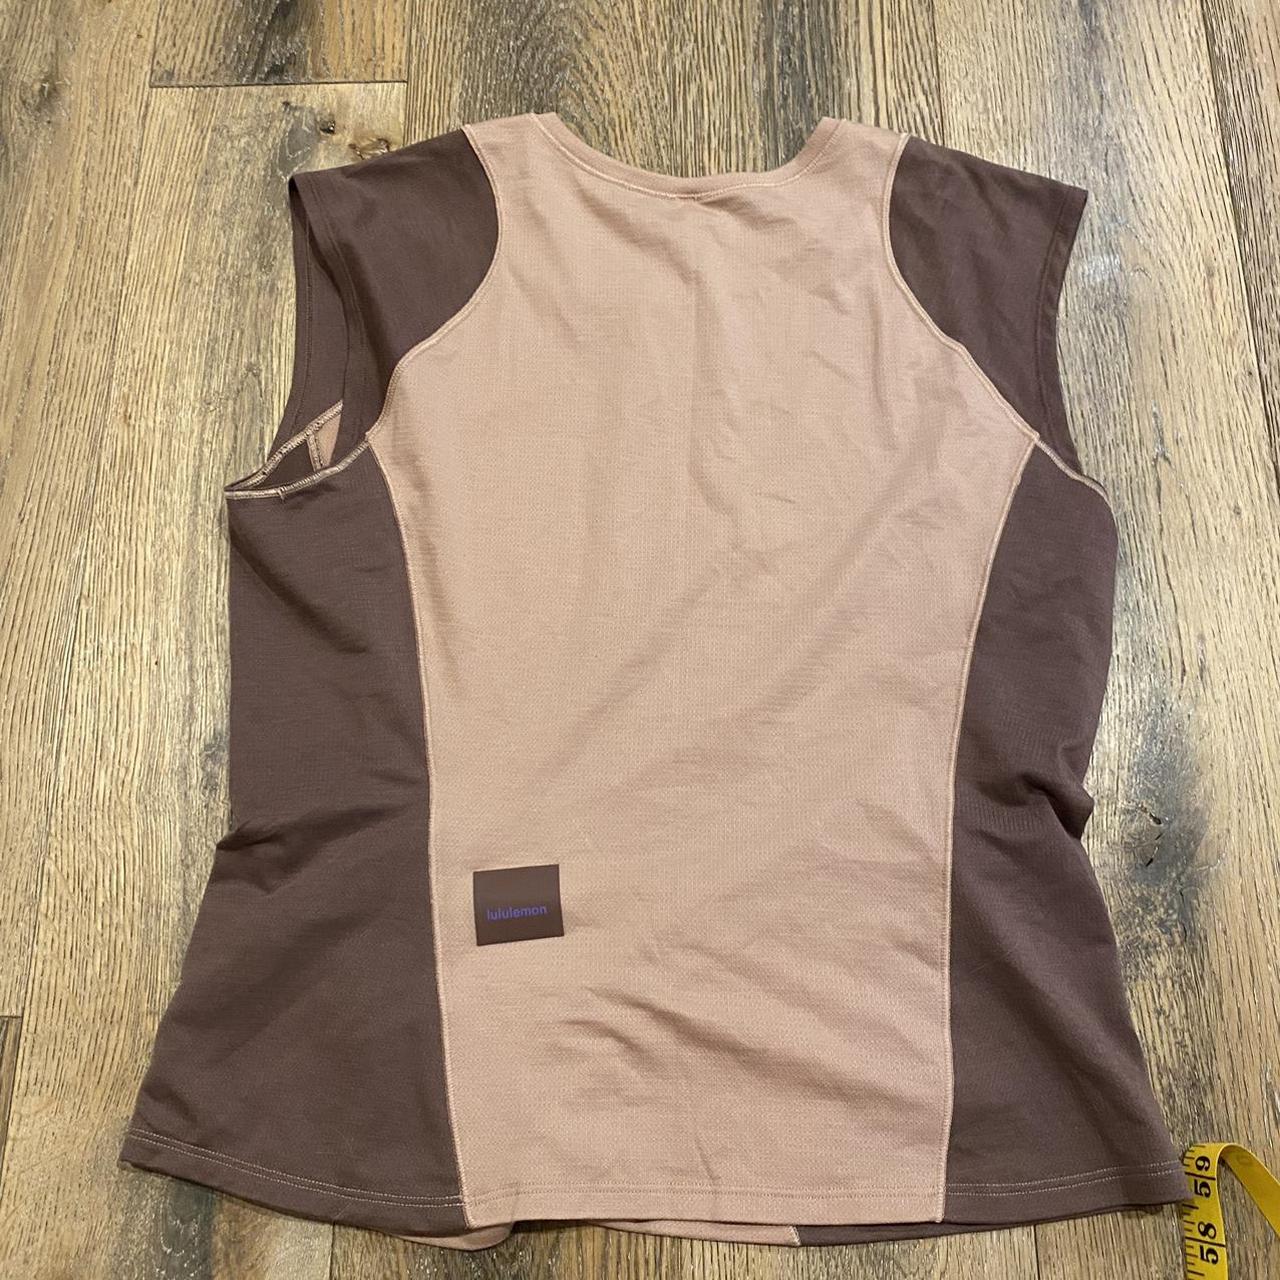 Lululemon Cap Sleeve Hiking Tank Top In Pink Clay/dark Oxide